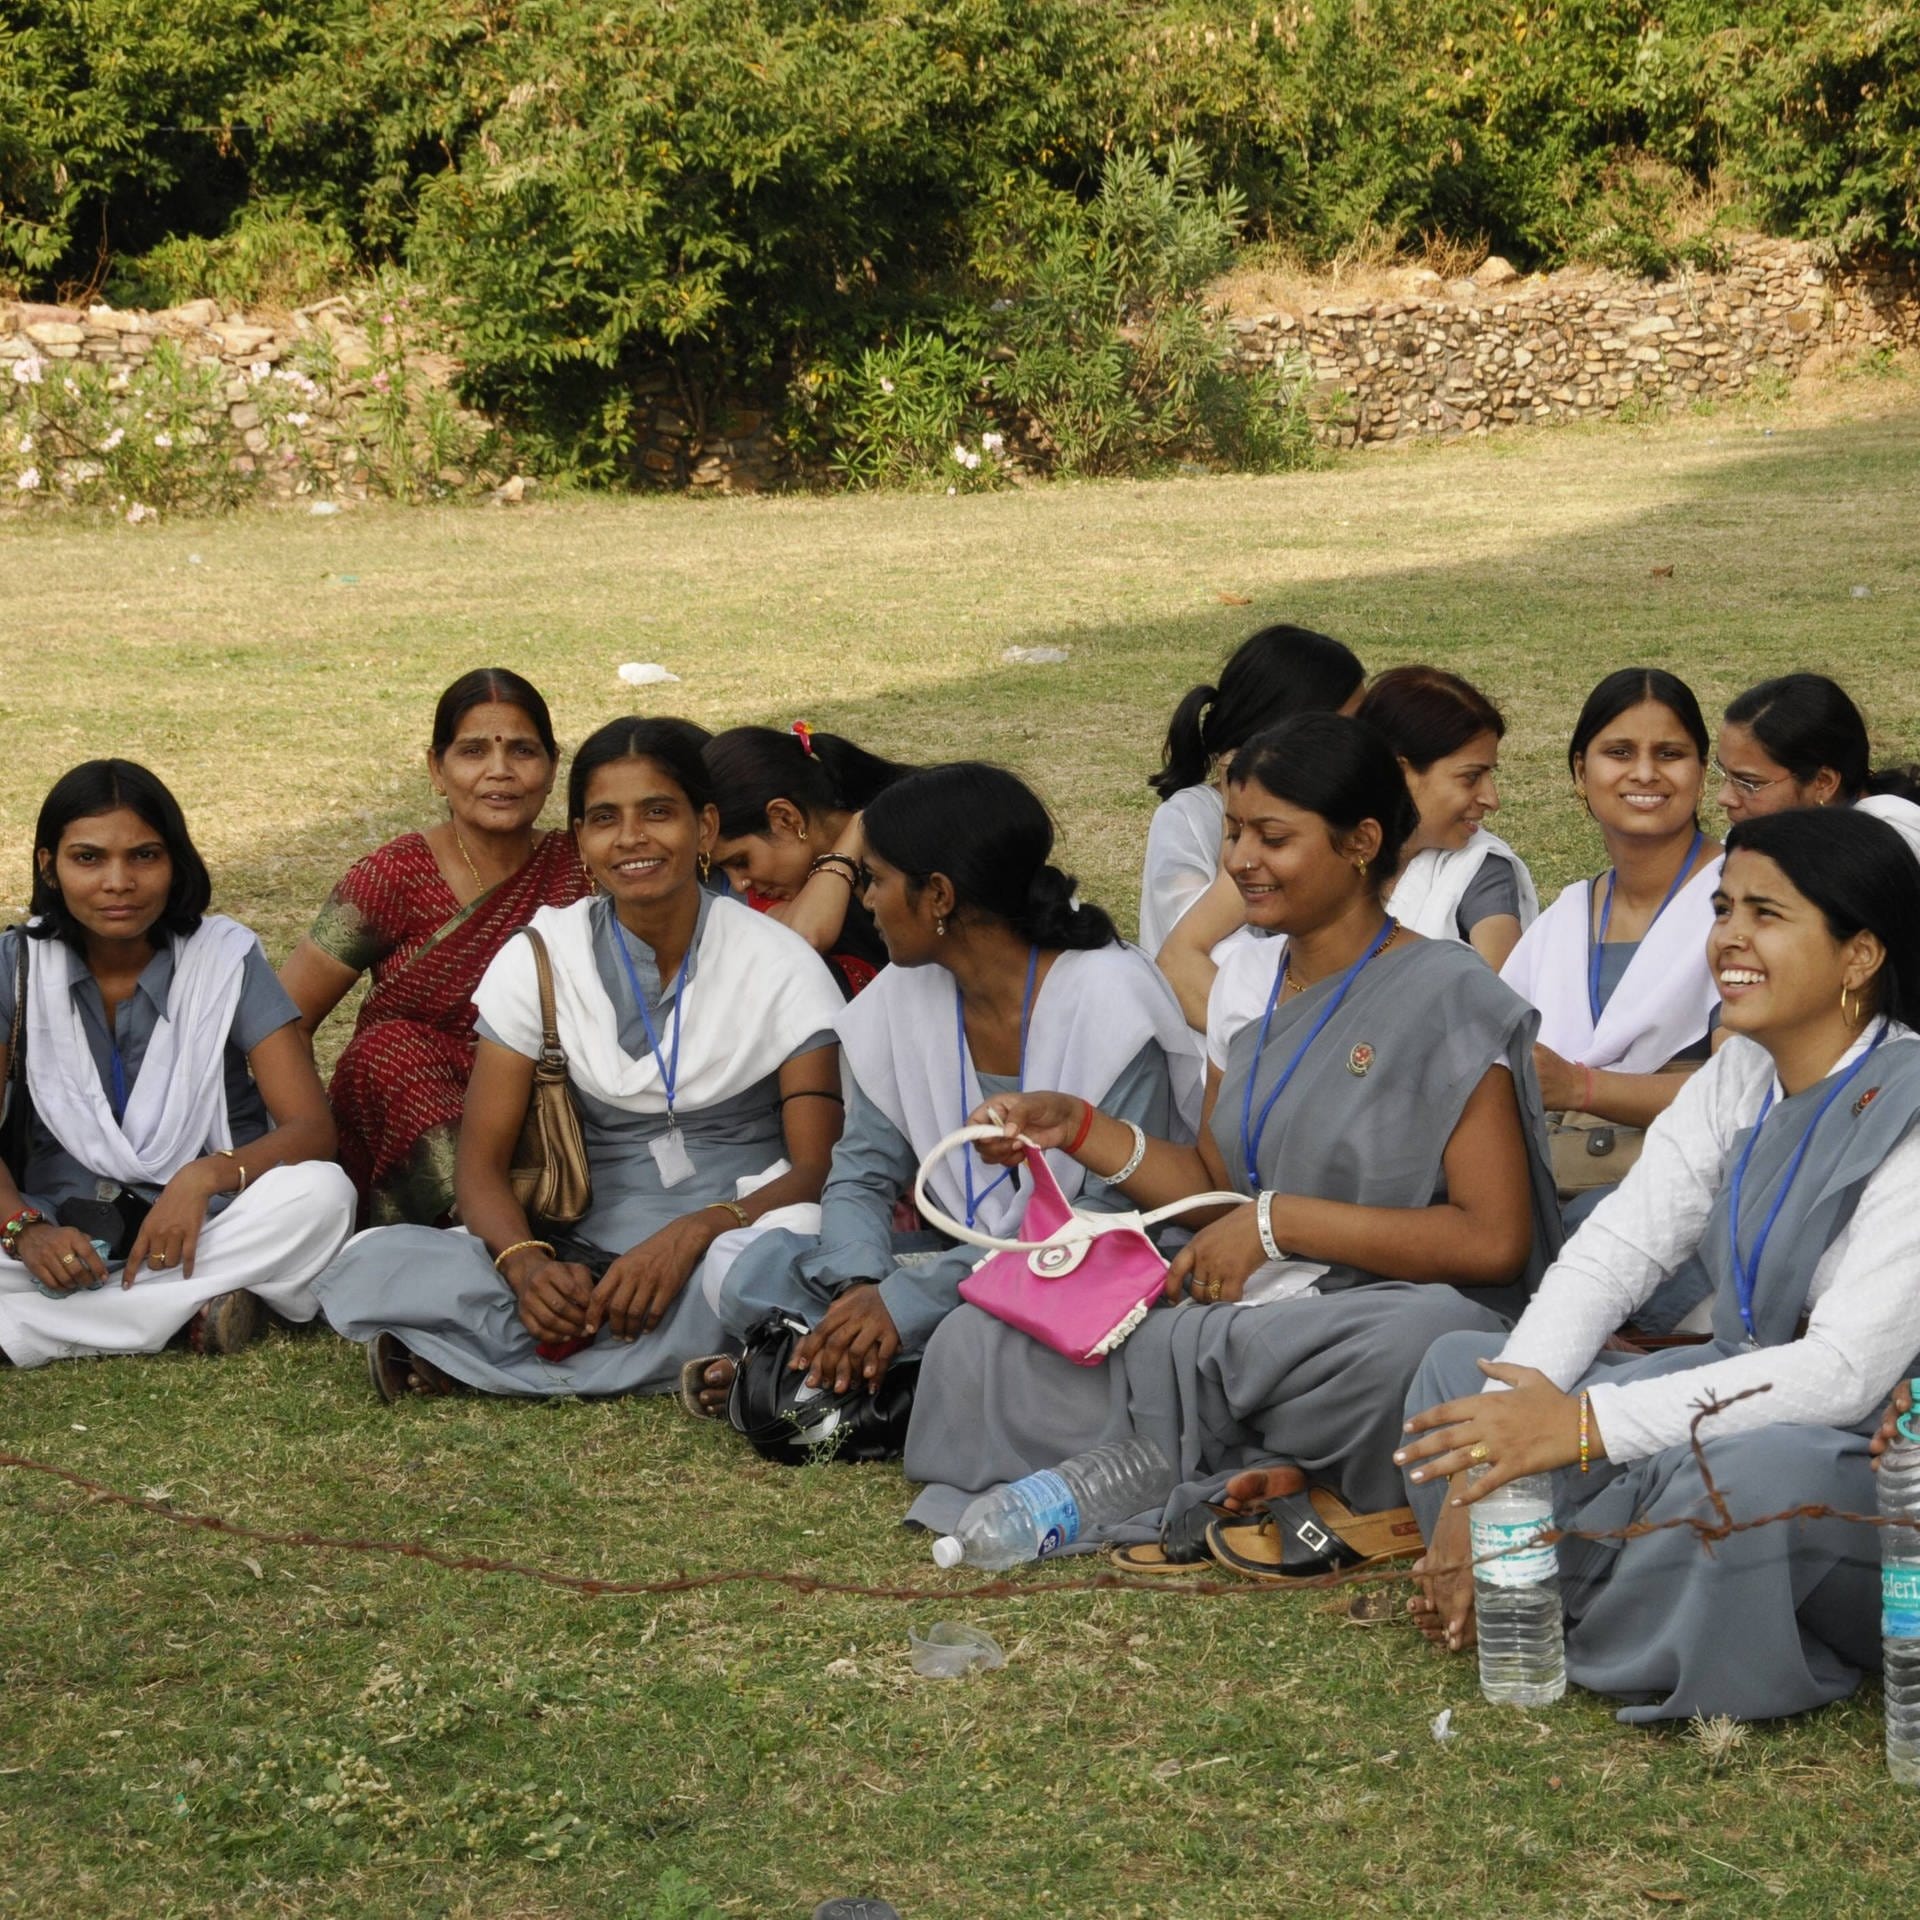 Frauen in Indien – Zwischen Aufbruch und Unterdrückung